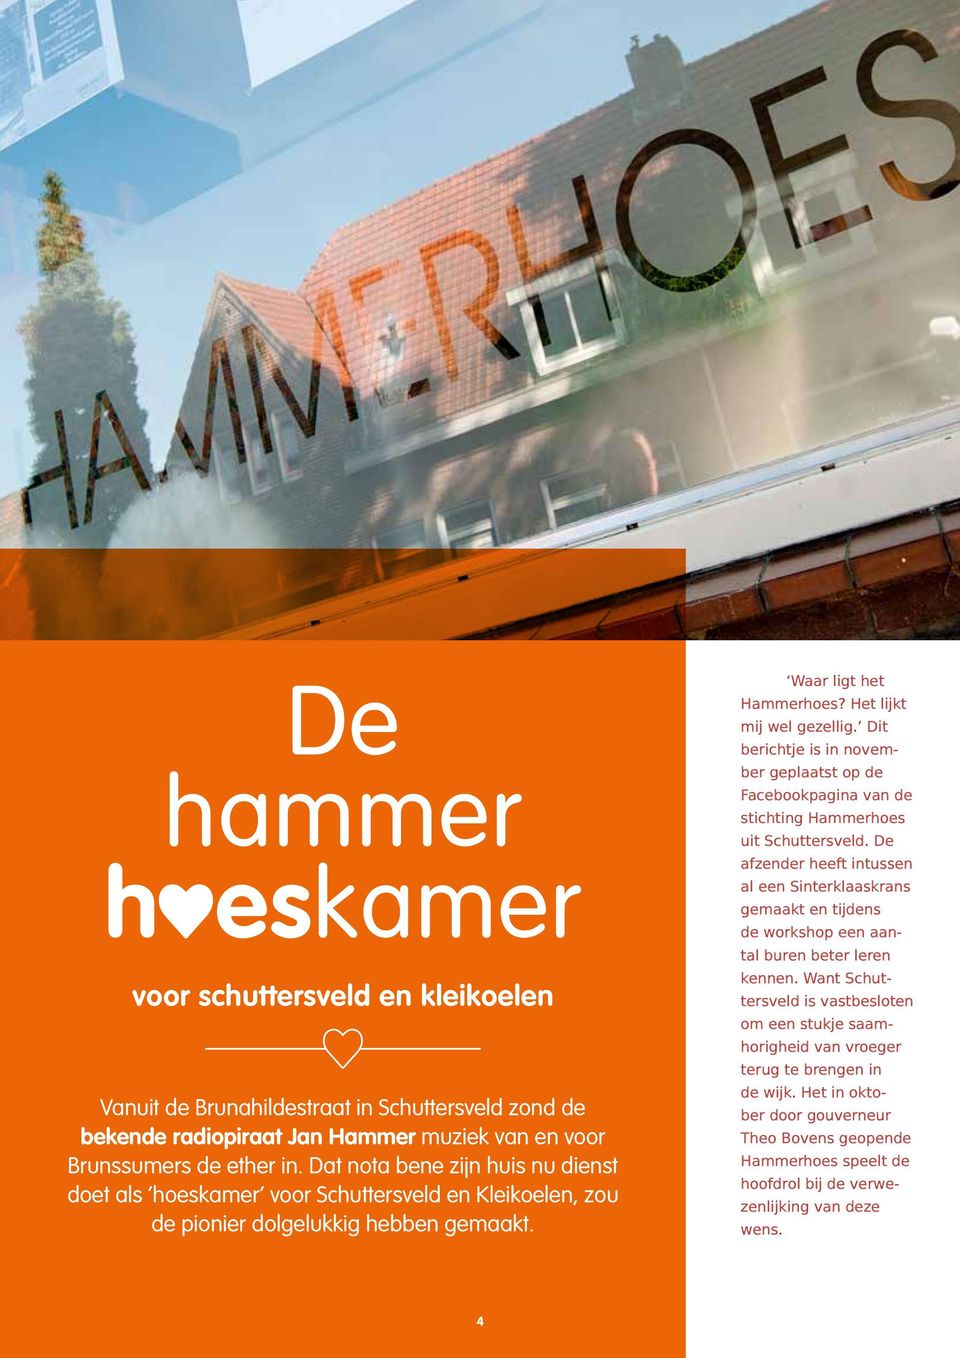 Dit berichtje is in november geplaatst op de Facebookpagina van de stichting Hammerhoes uit Schuttersveld.